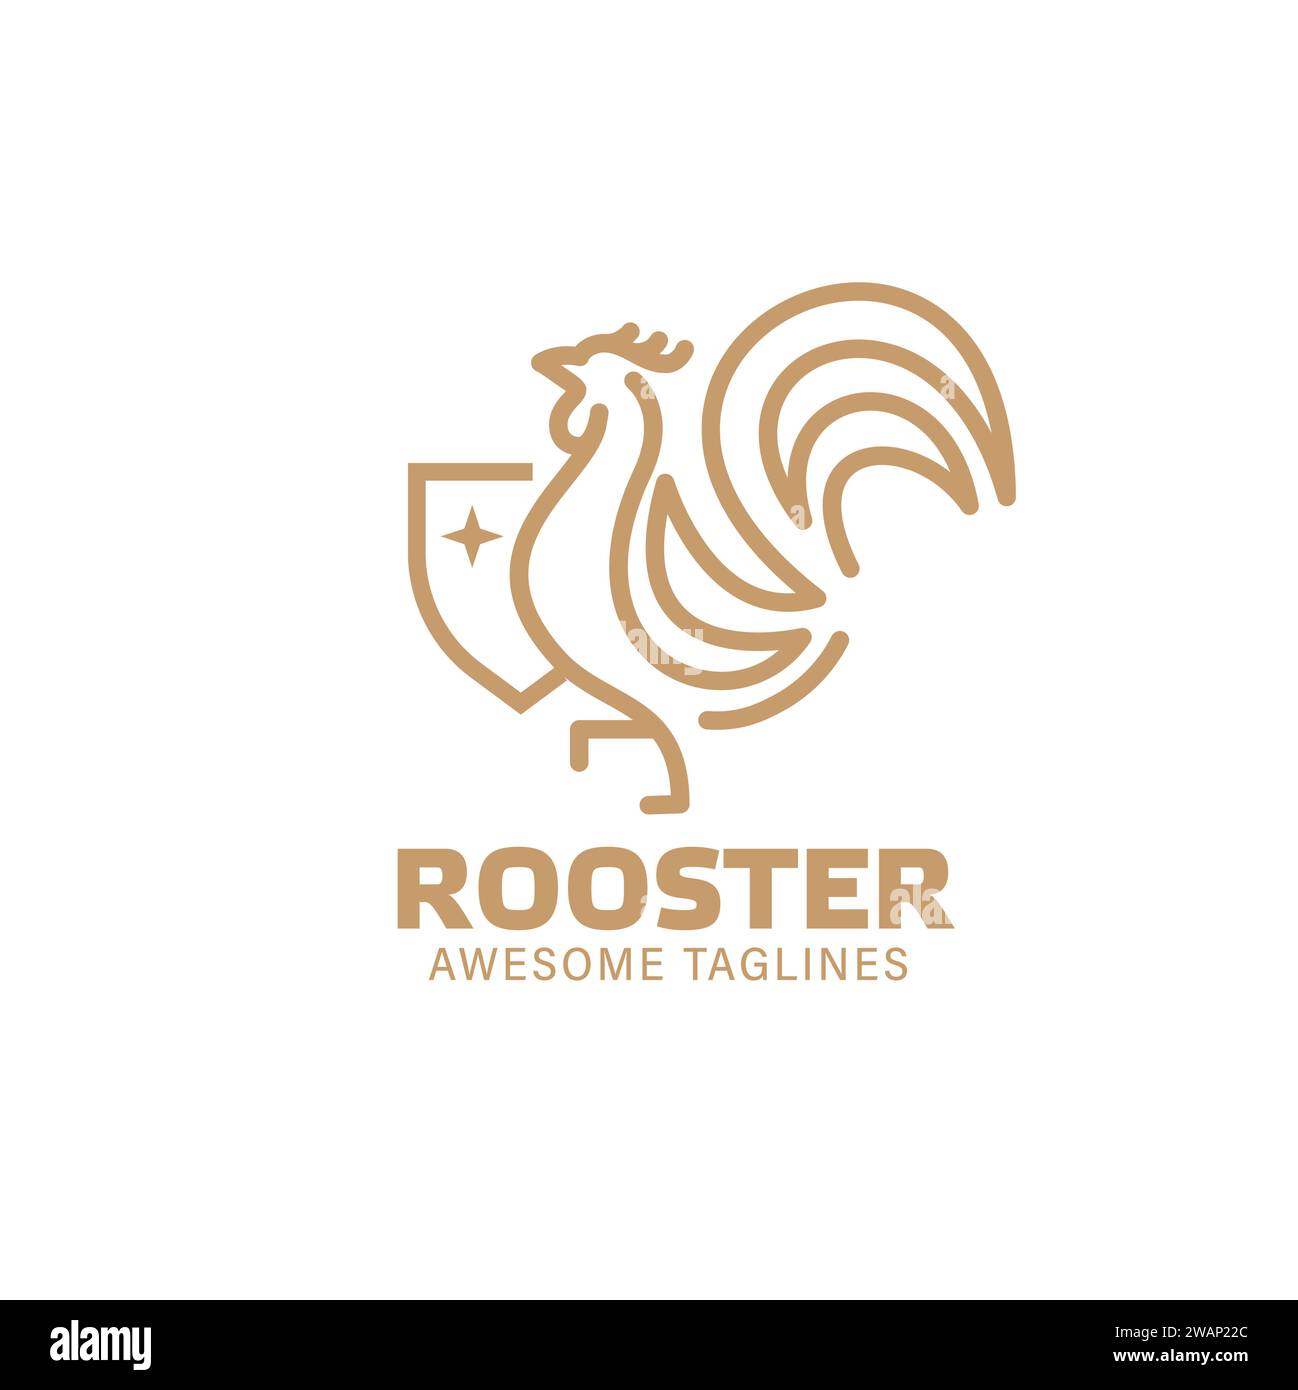 Contours simples Roosters et illustration de bouclier, éléments simples de conception de poulet pour le logo Illustration de Vecteur